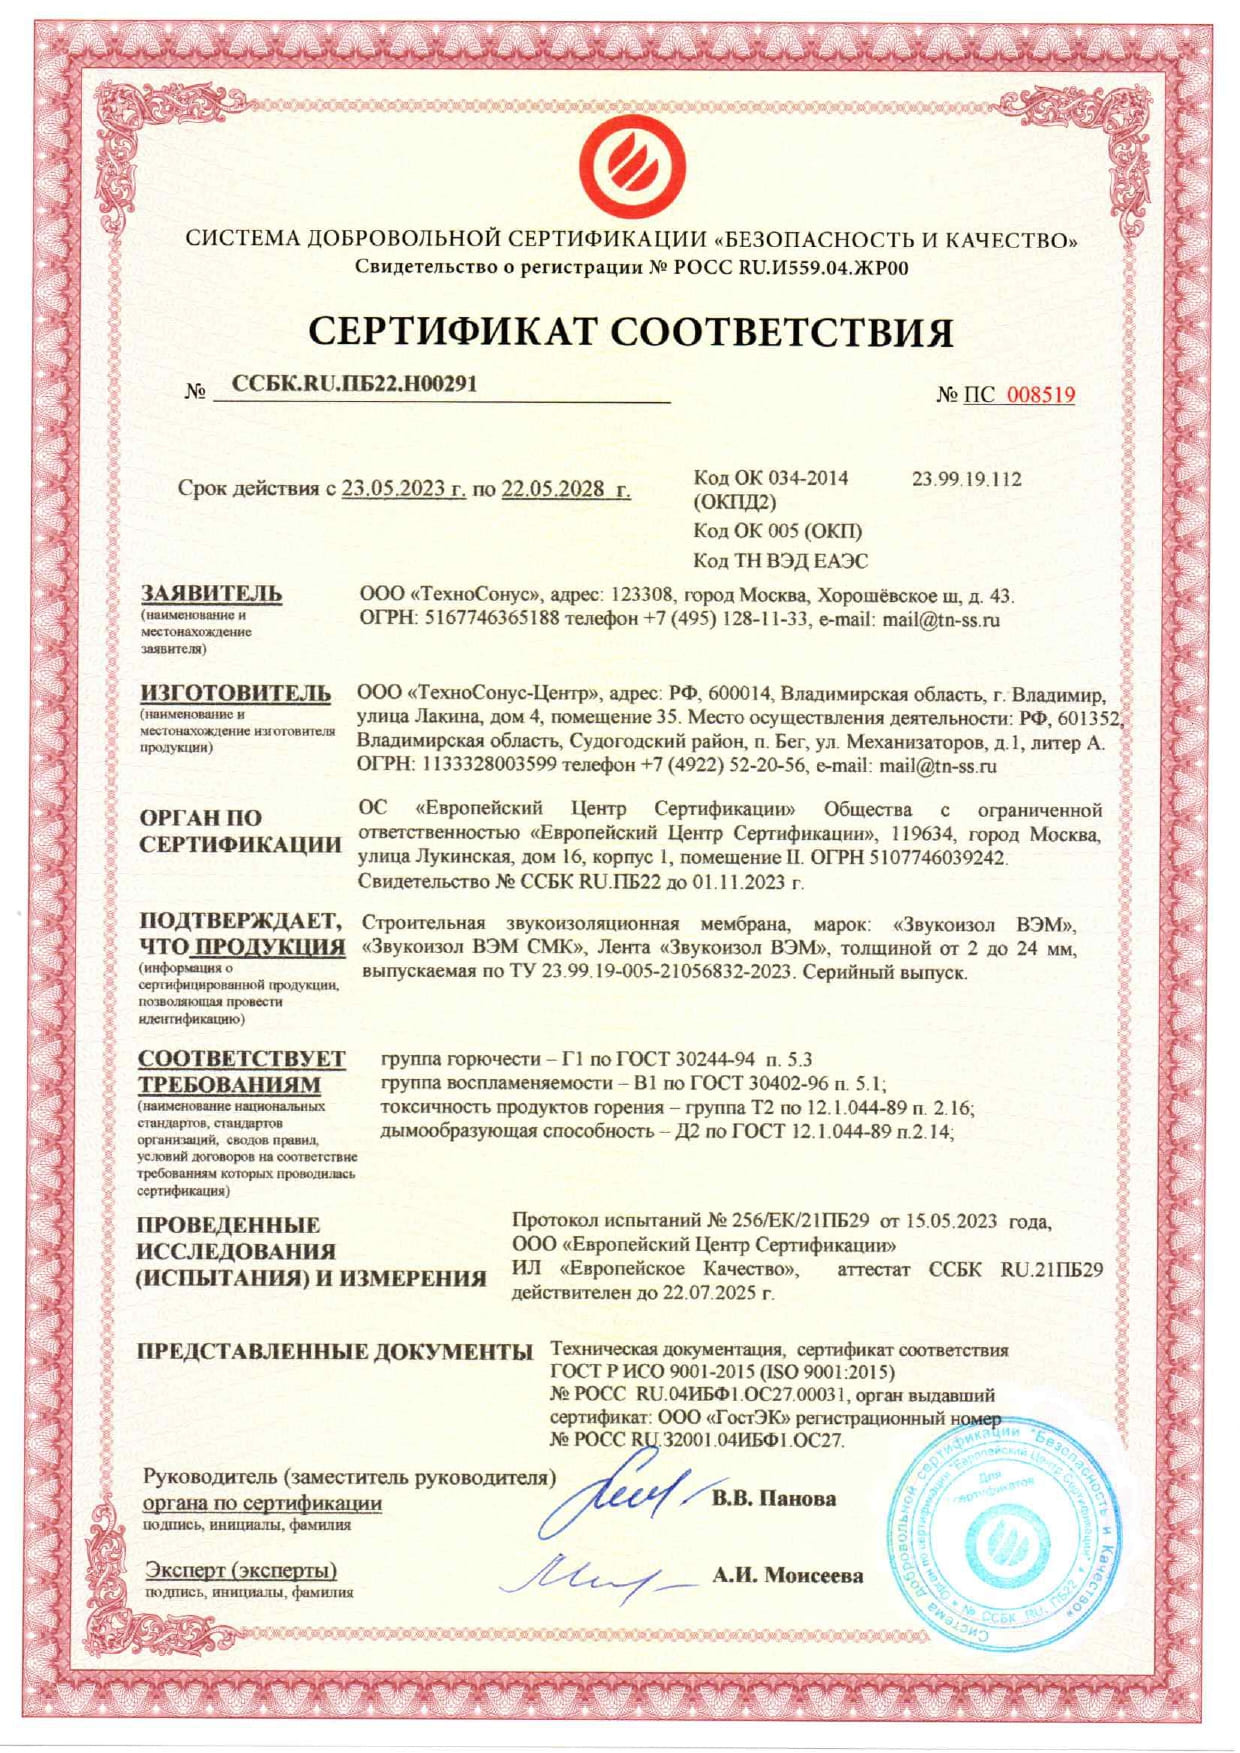 Сертификат пожарной безопасности до 22.05.2028г.